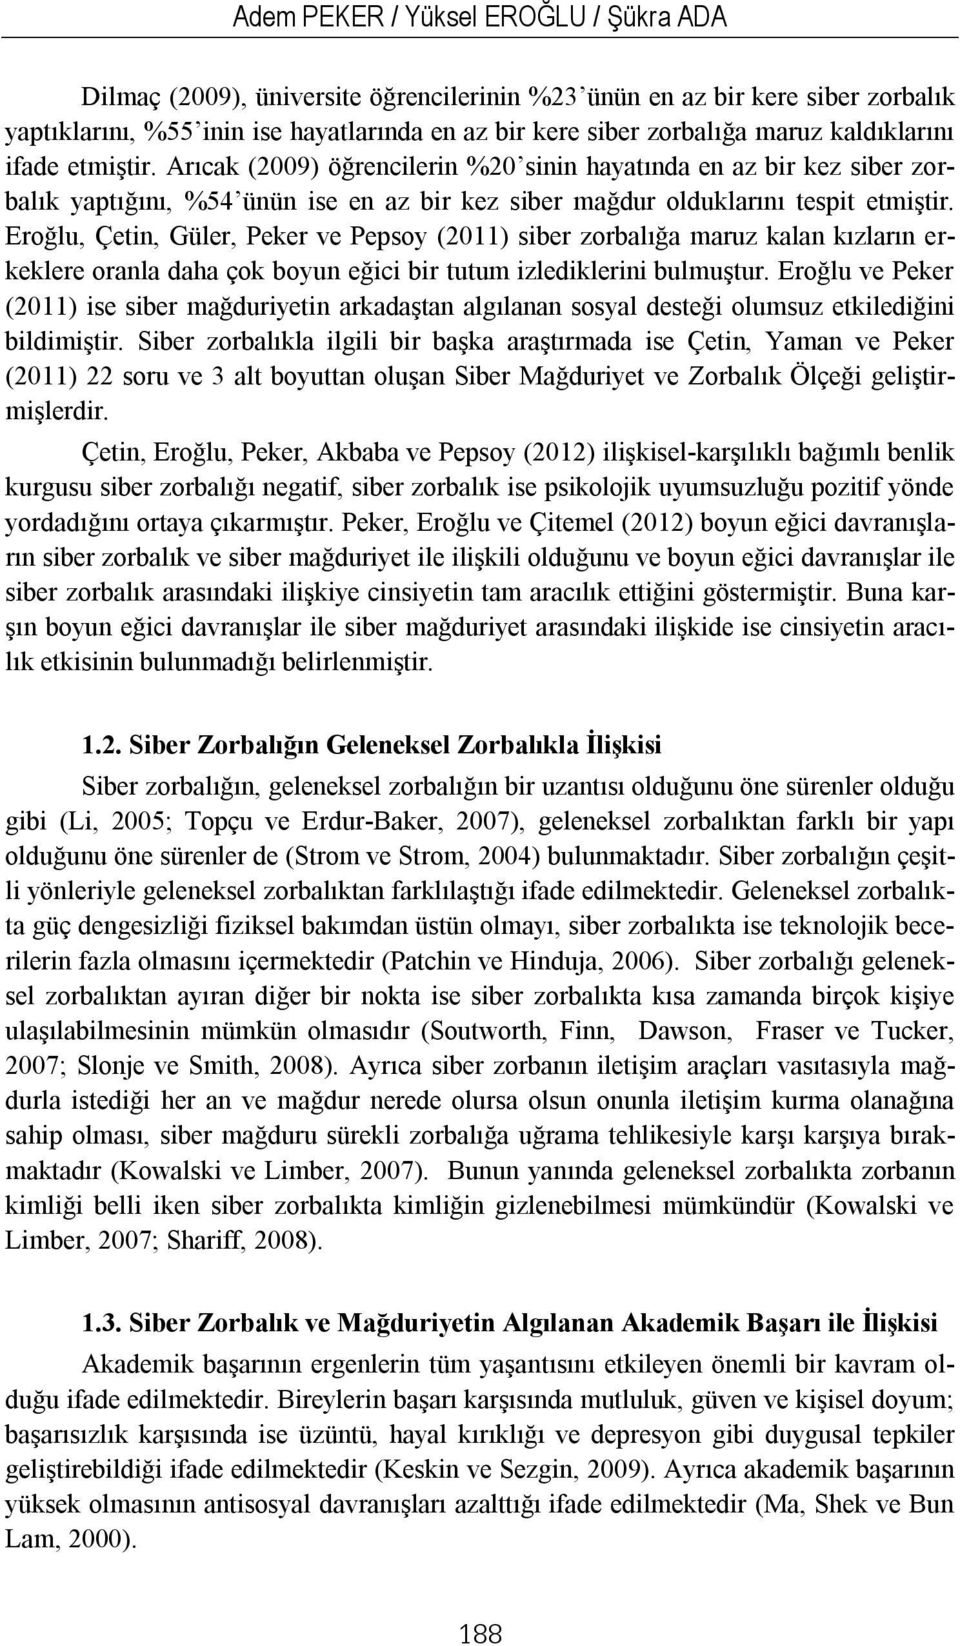 Eroğlu, Çetin, Güler, Peker ve Pepsoy (2011) siber zorbalığa maruz kalan kızların erkeklere oranla daha çok boyun eğici bir tutum izlediklerini bulmuştur.